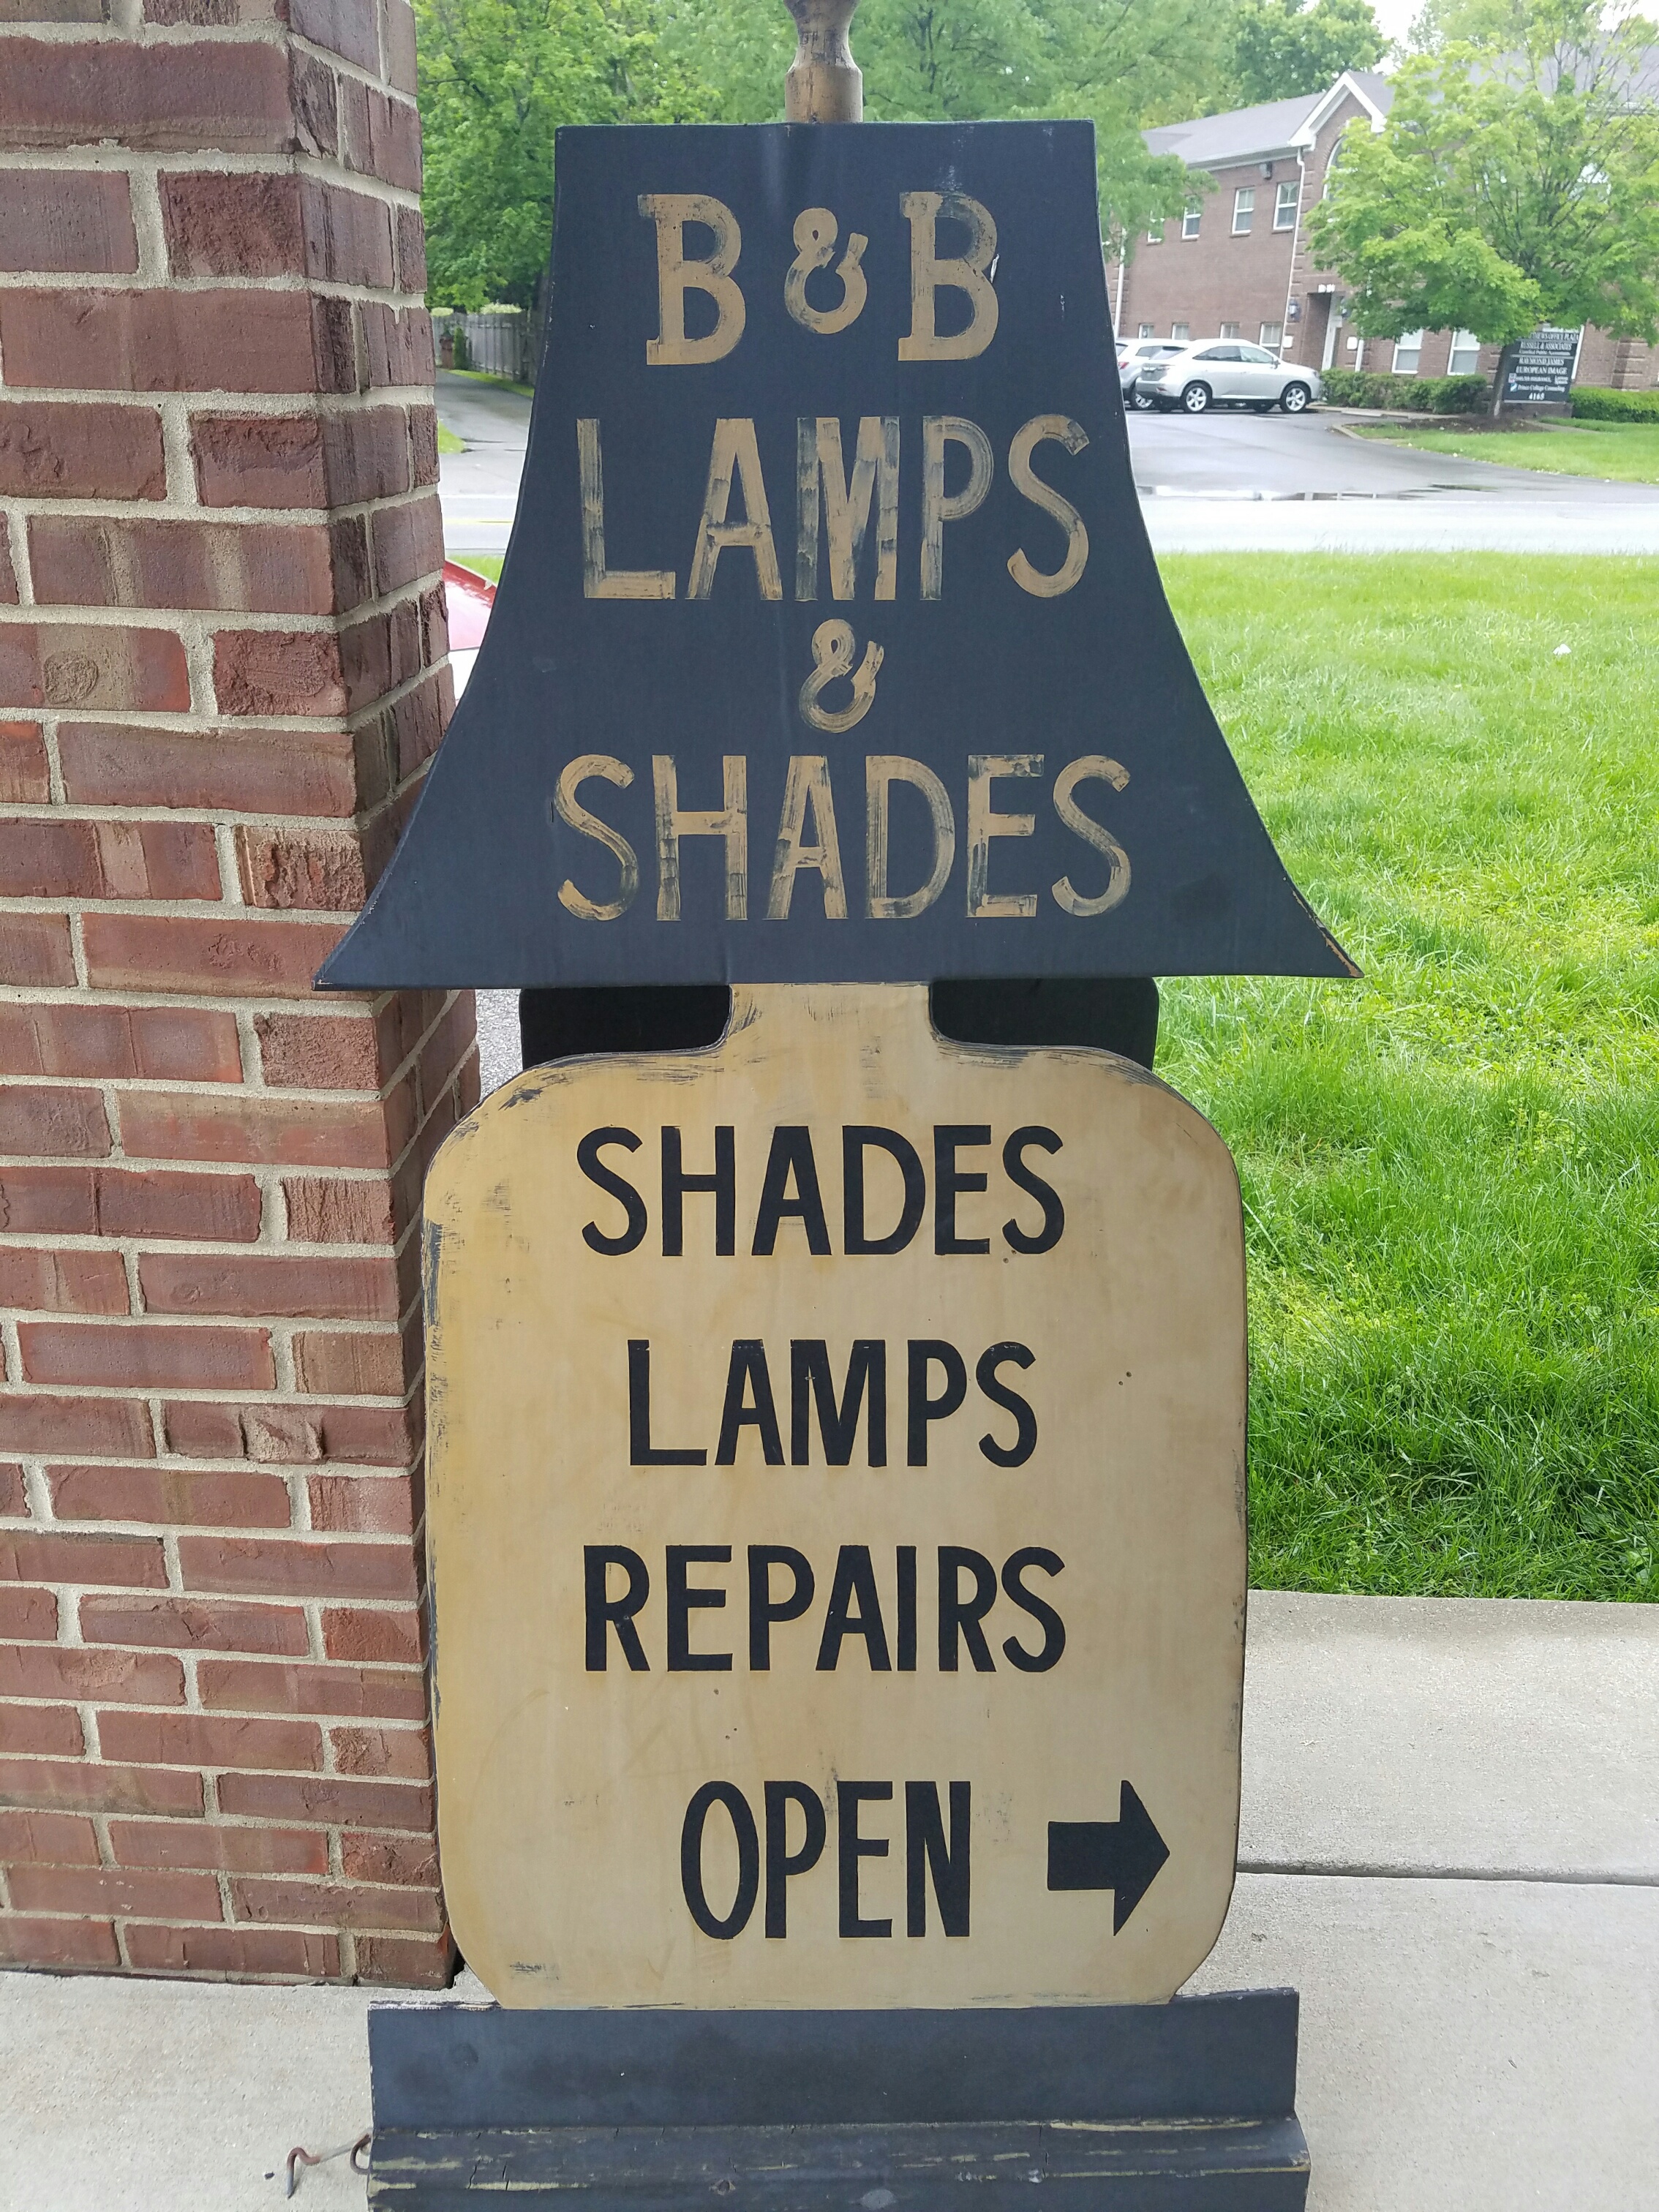 B & B Lamps and Shades Photo